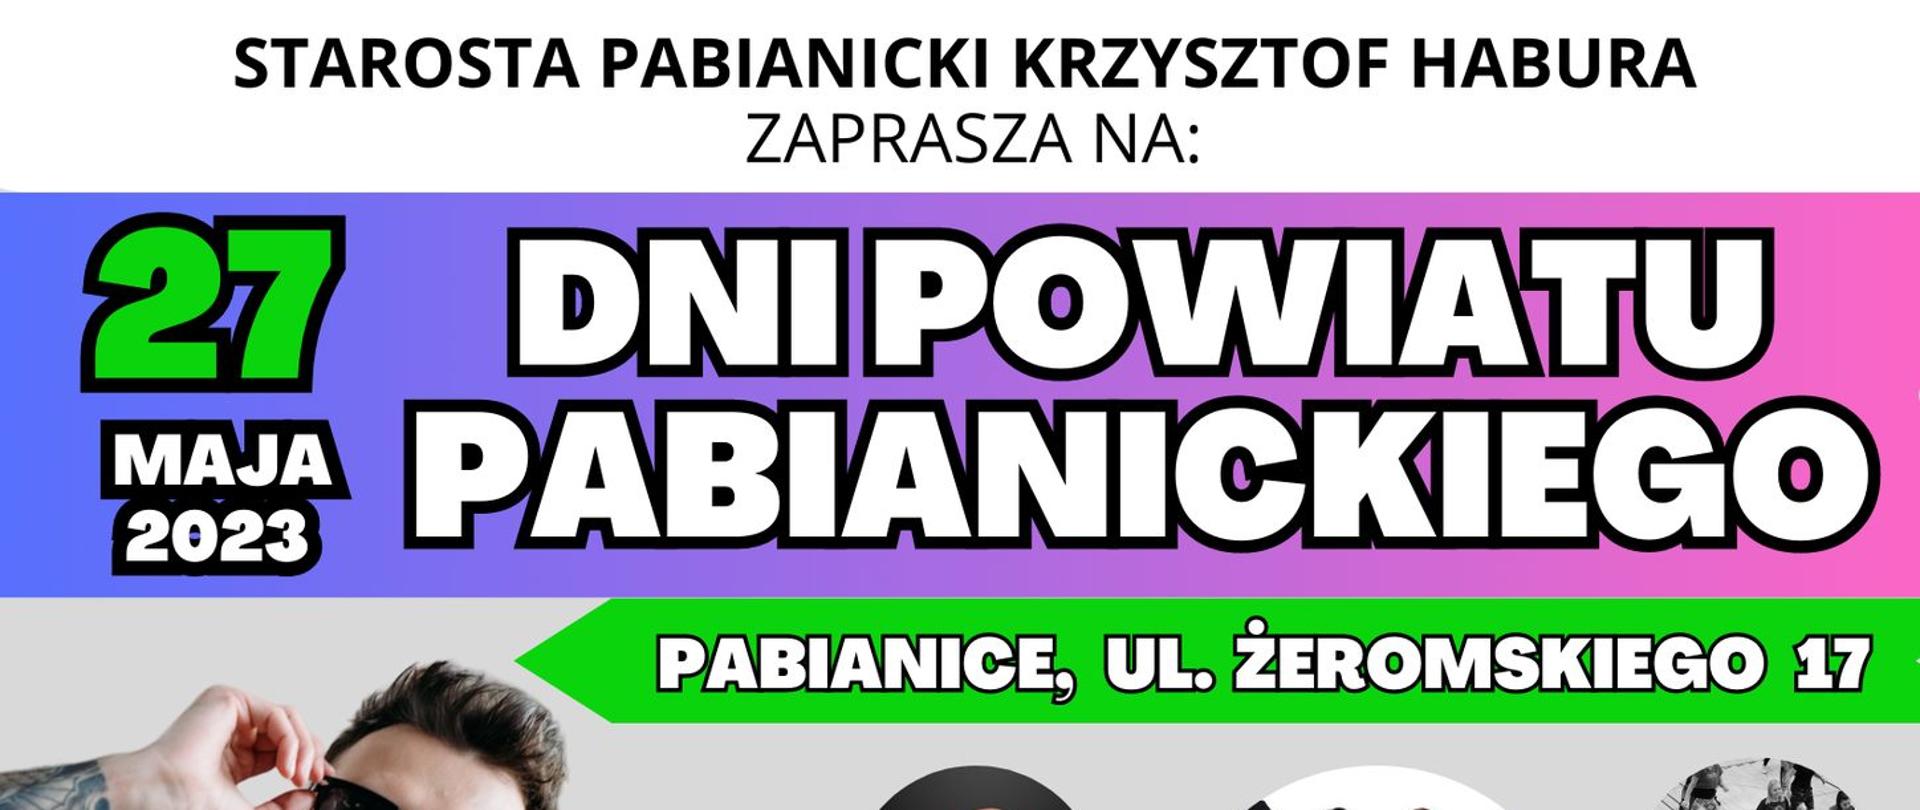 Plakat Dni Powiatu Pabianickiego